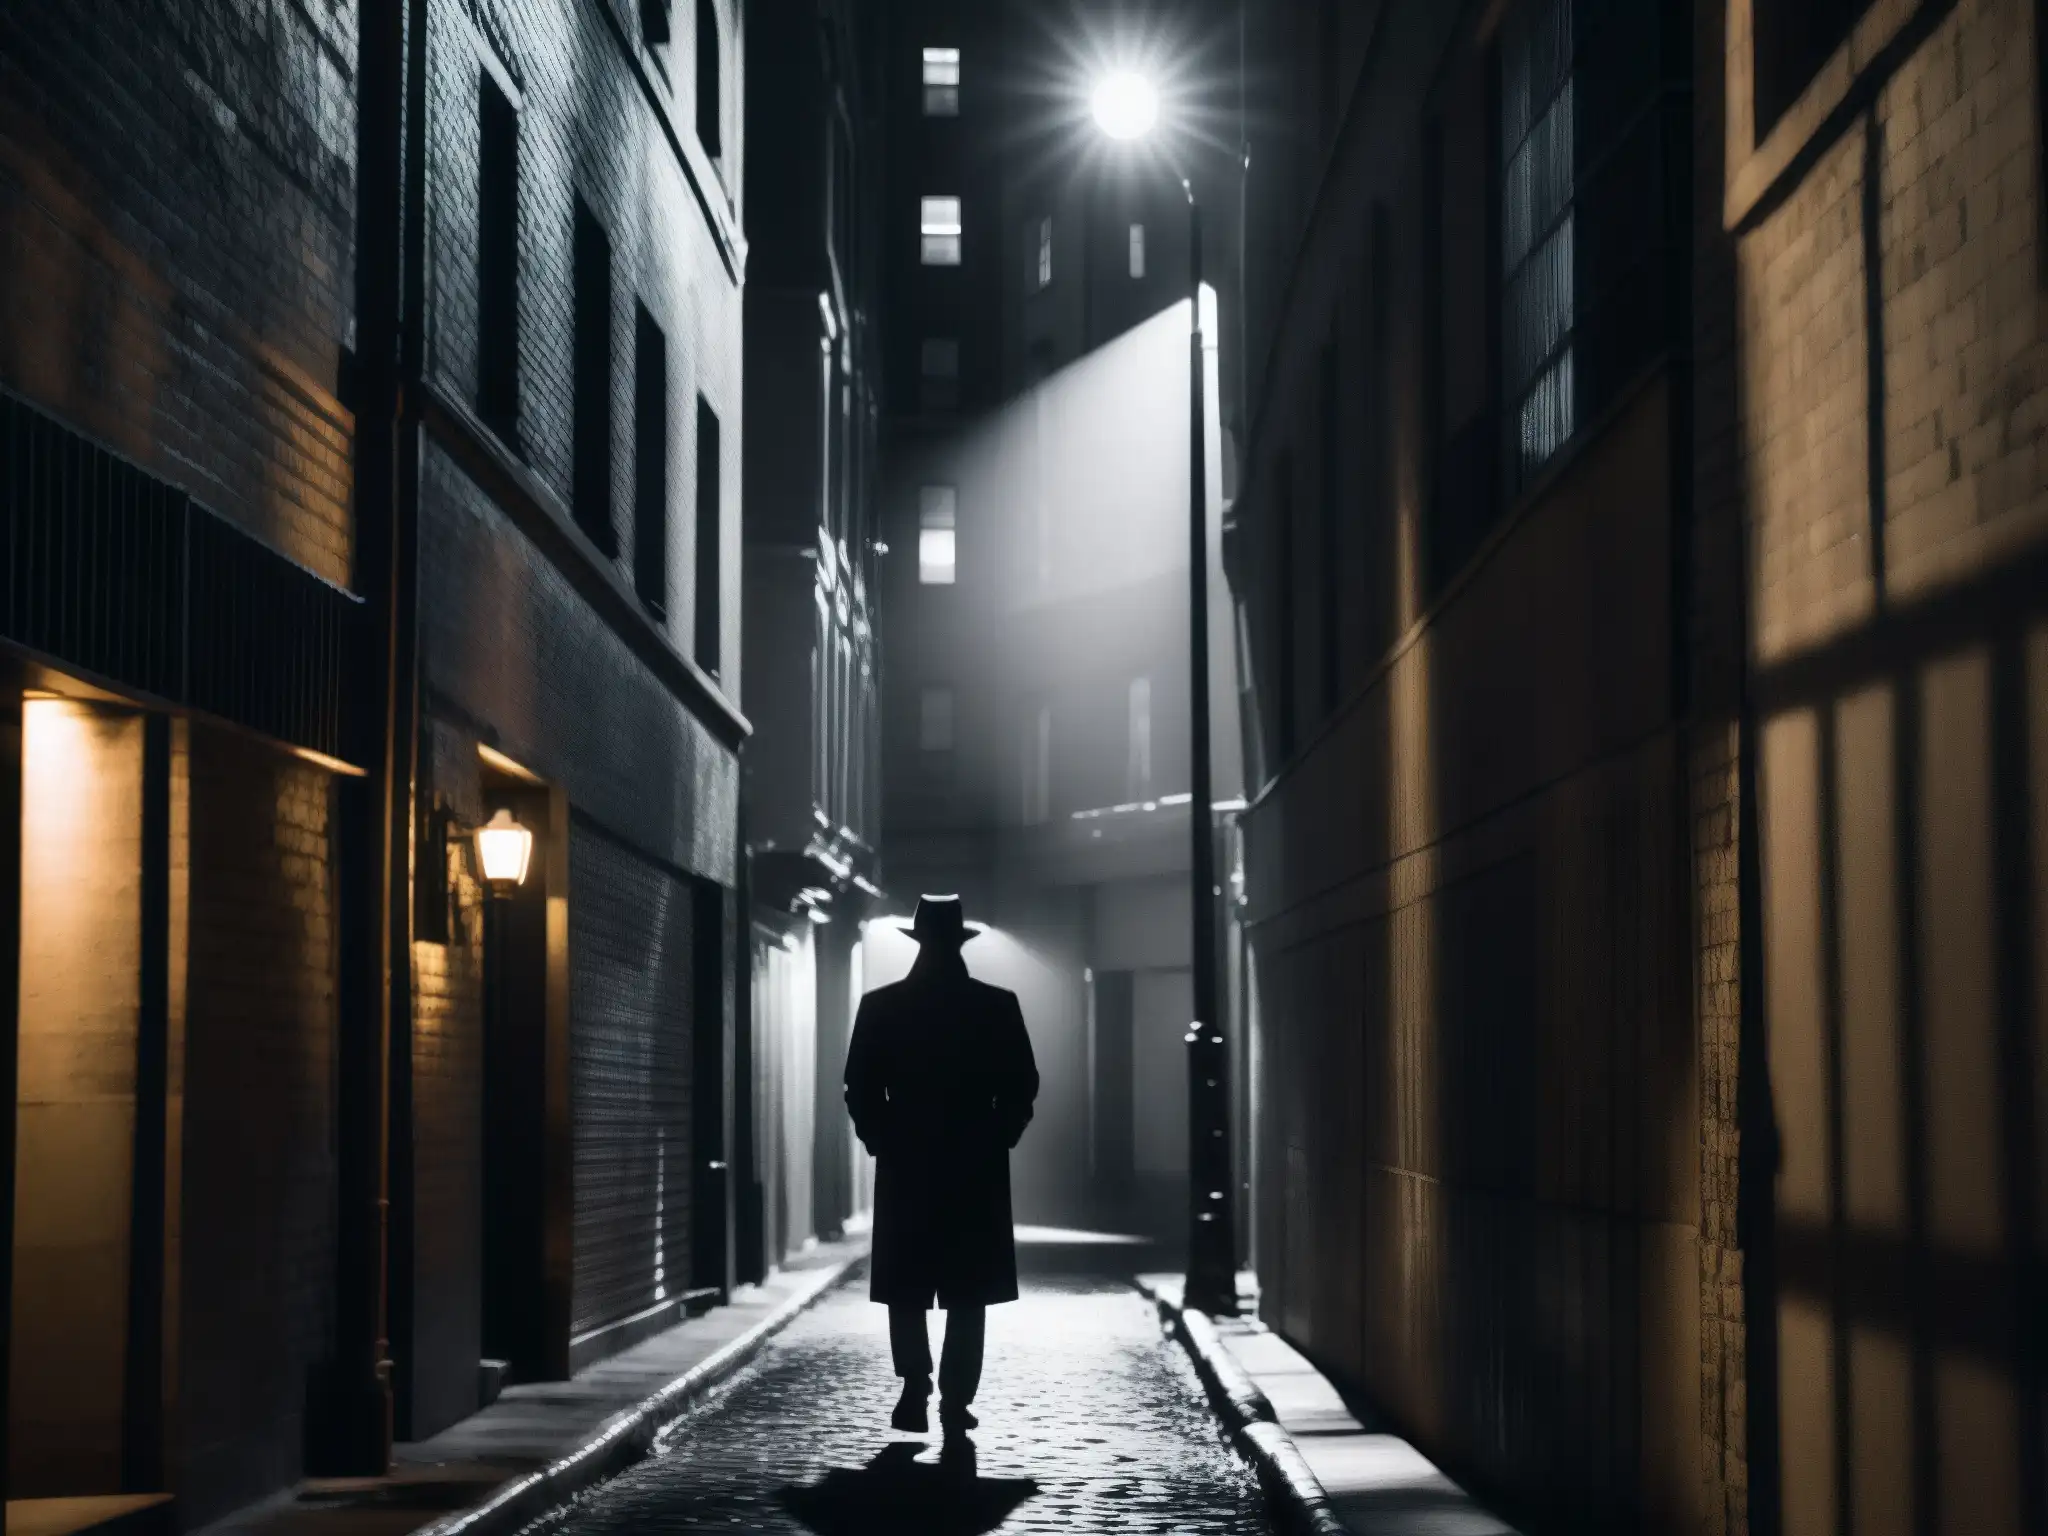 Una figura sombría camina sola por un oscuro callejón urbano, reflejando fobias sociales y leyendas urbanas